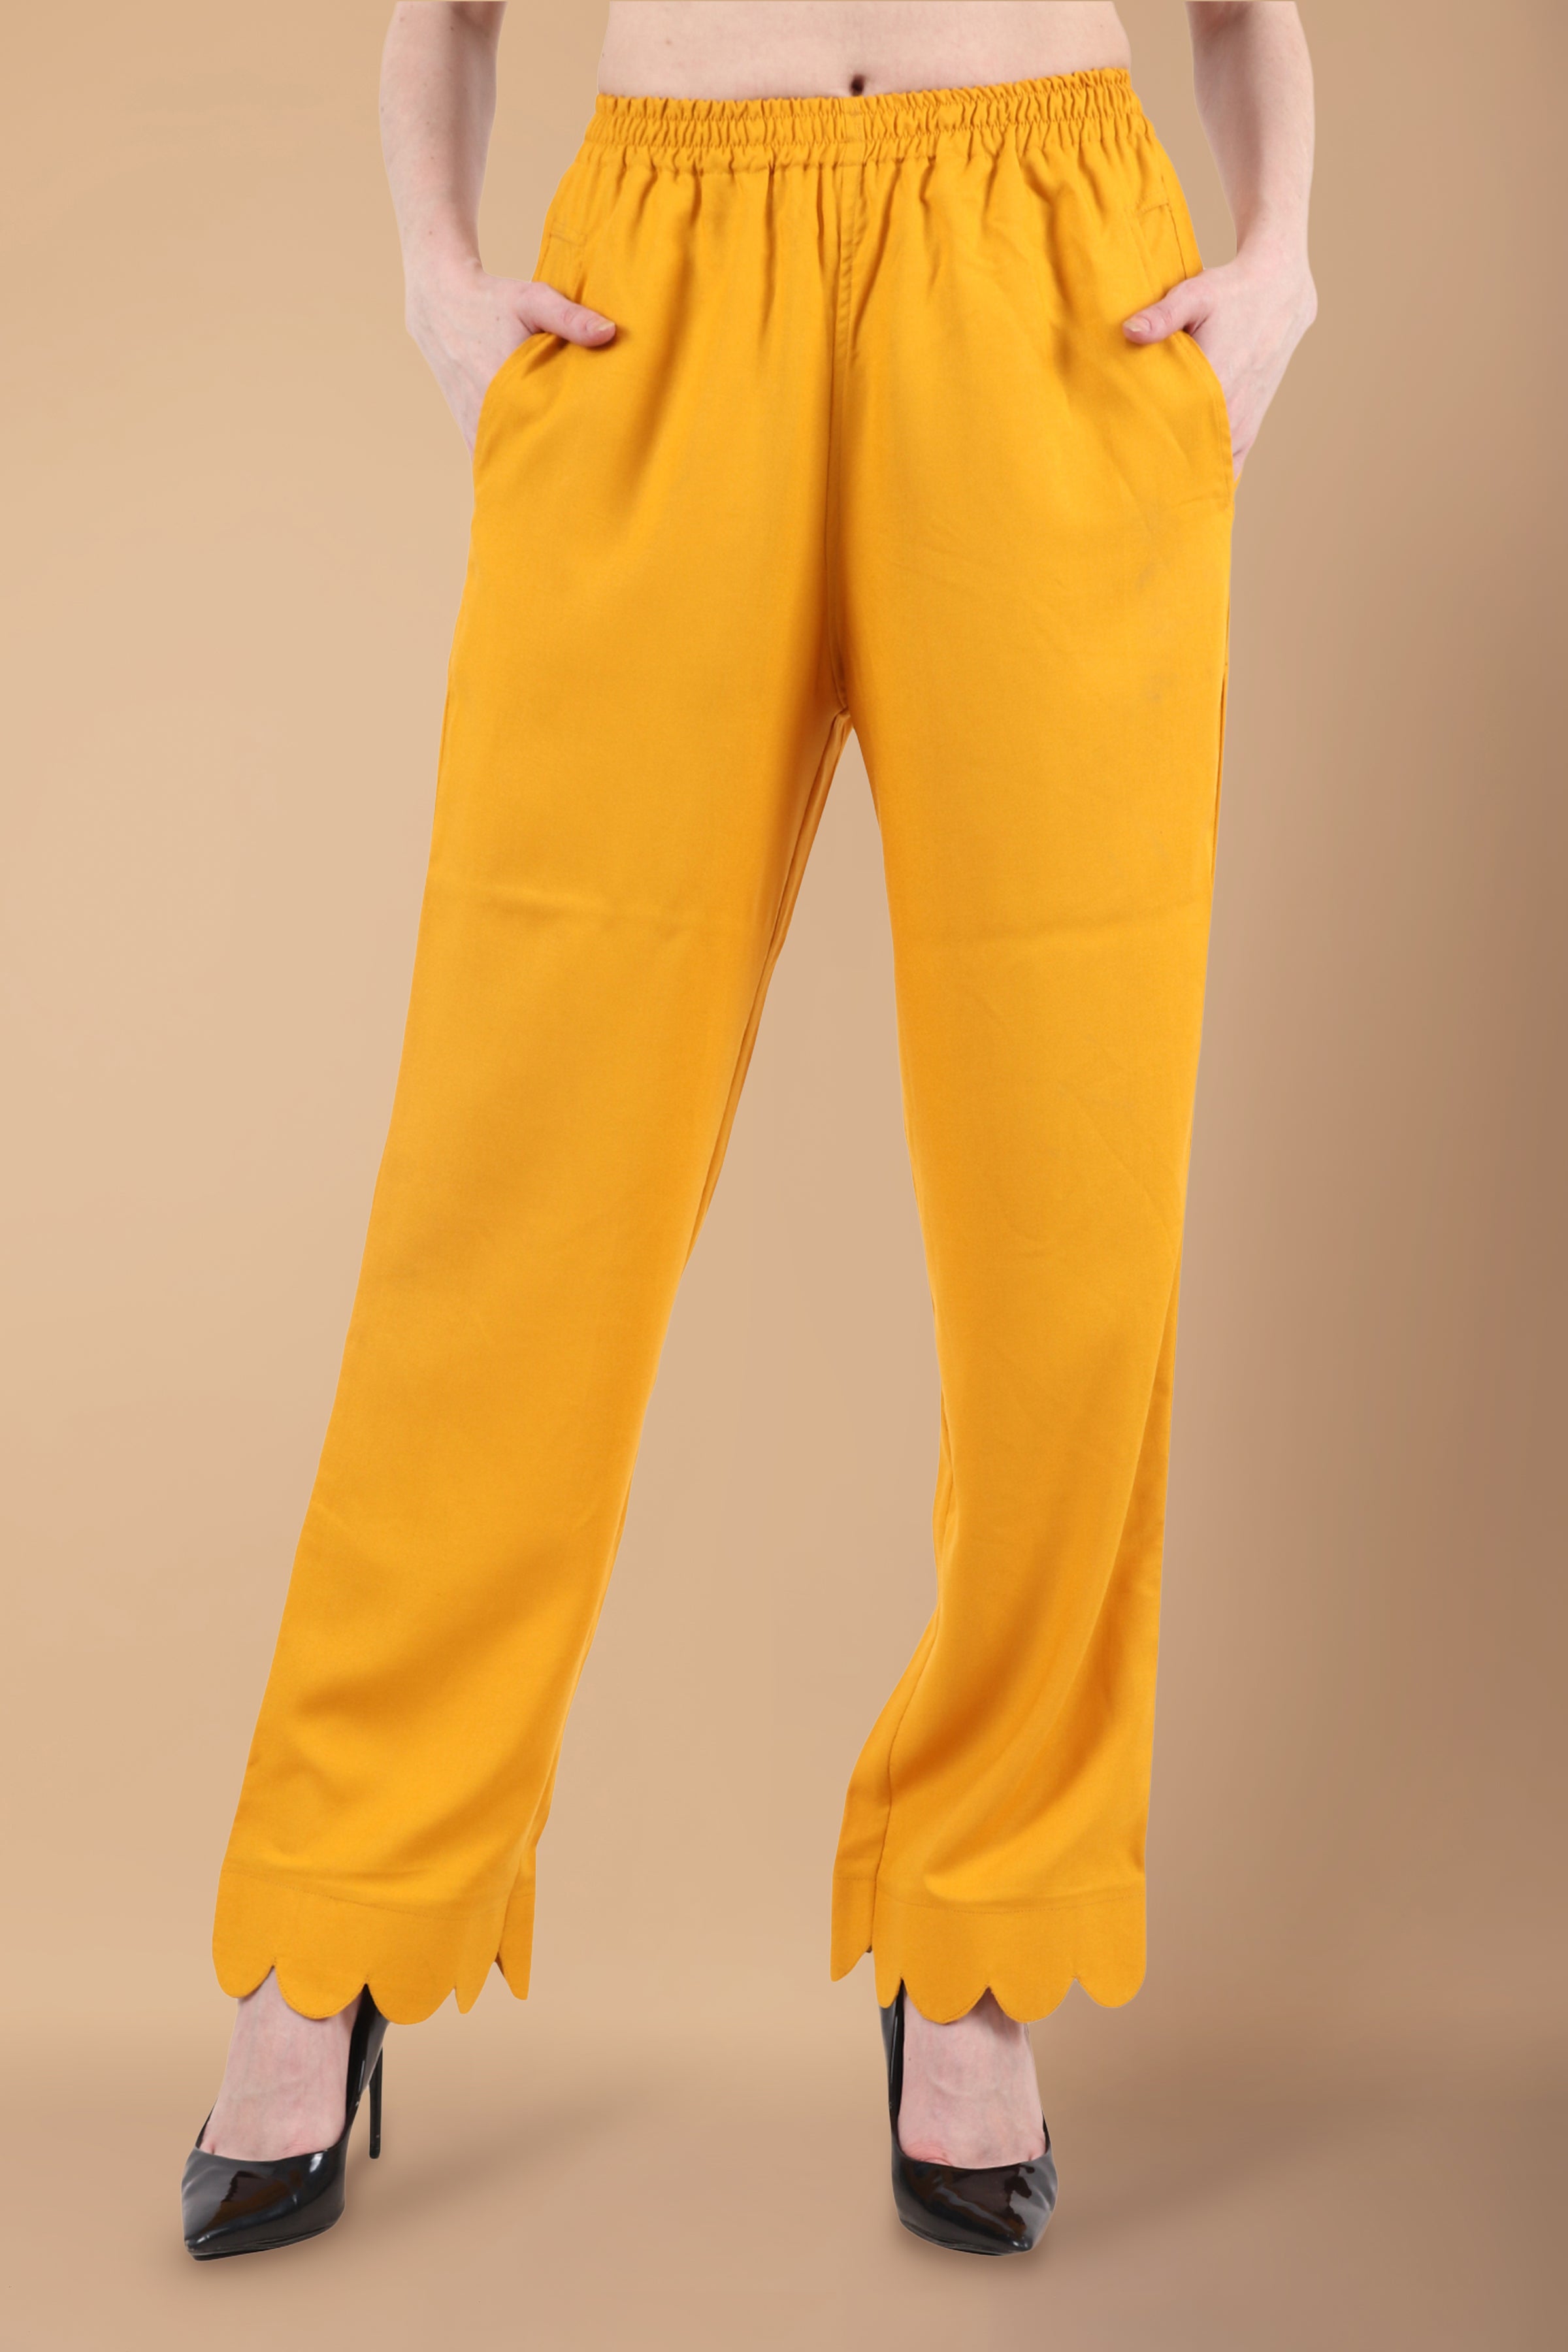 Buy Maroon Trousers  Pants for Women by TRENDYOL Online  Ajiocom